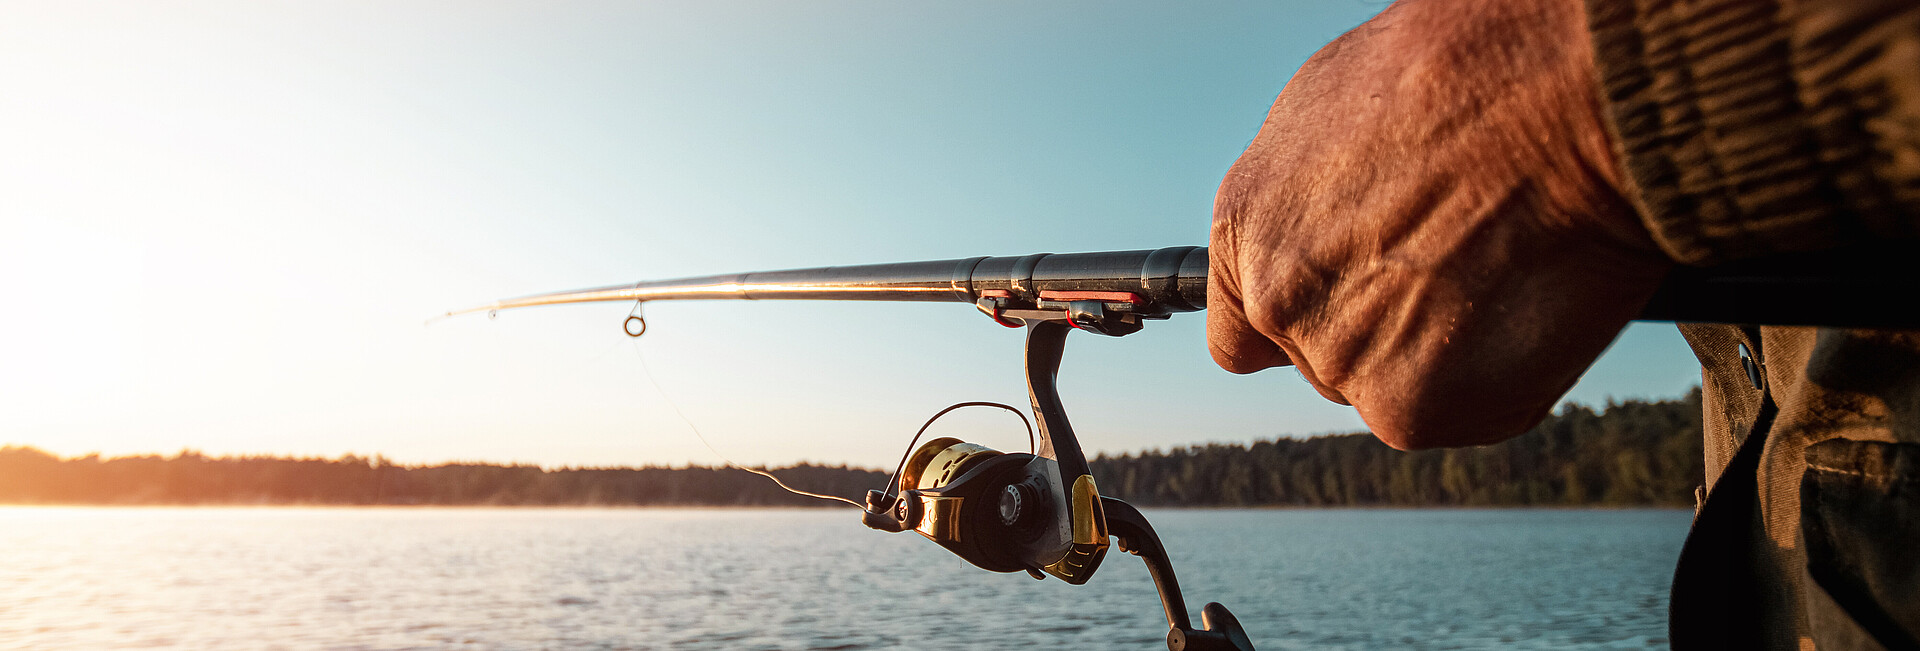 Hände eines Mannes halten eine Angelrute, ein Fischer fängt Fische im Morgengrauen.